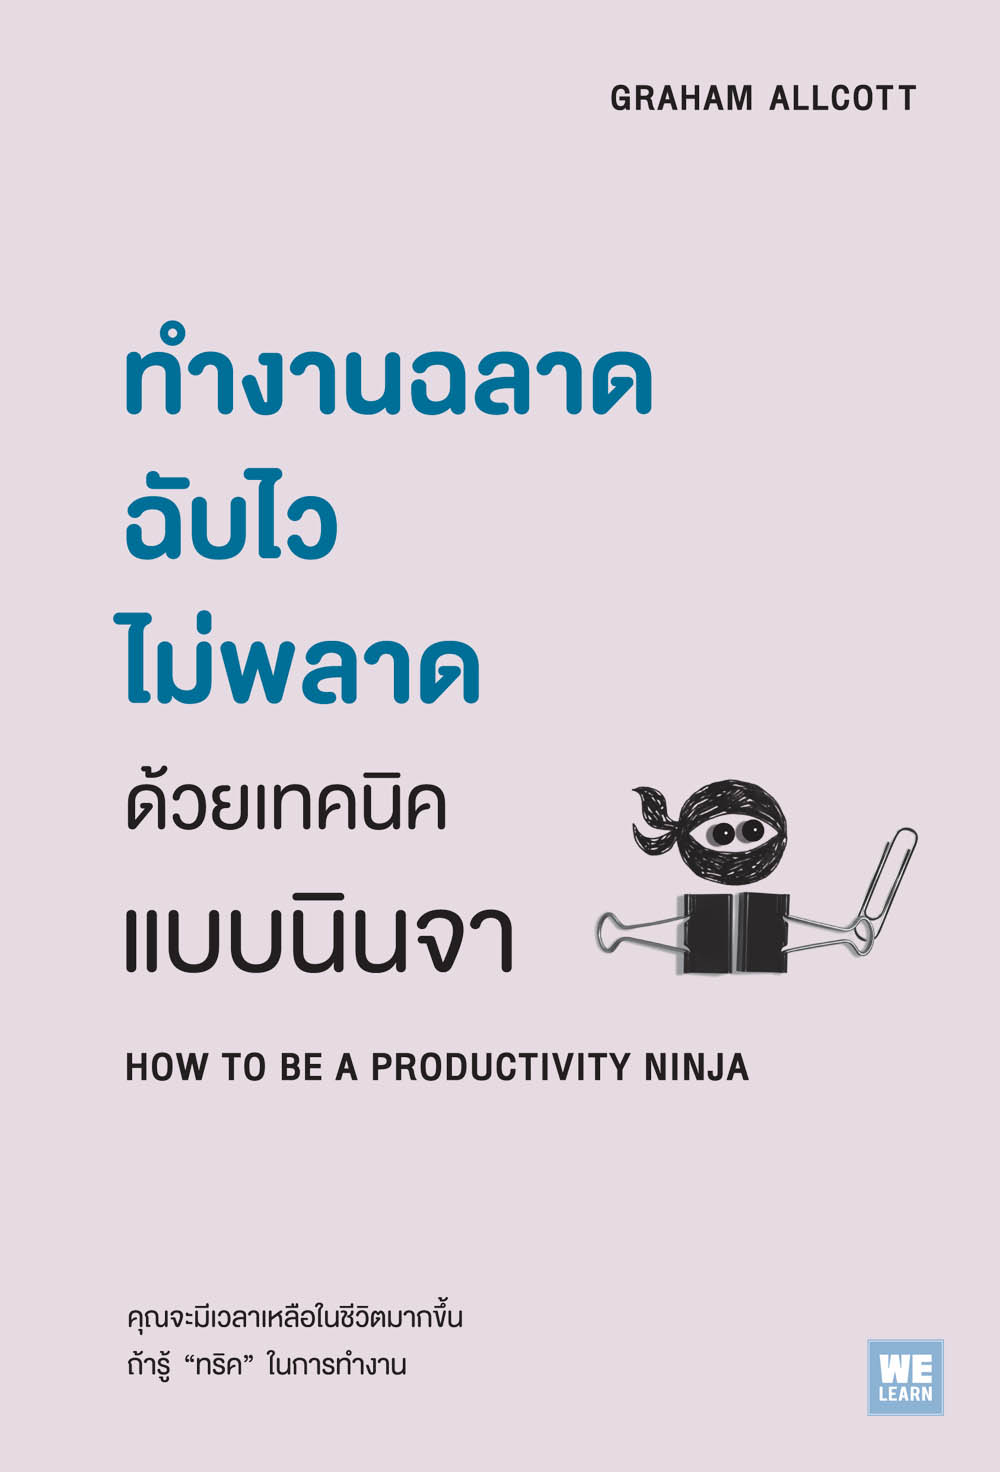 ทำงานฉลาด ฉับไว ไม่พลาดด้วยเทคนิคแบบนินจา (How To Be A Productivity Ninja)